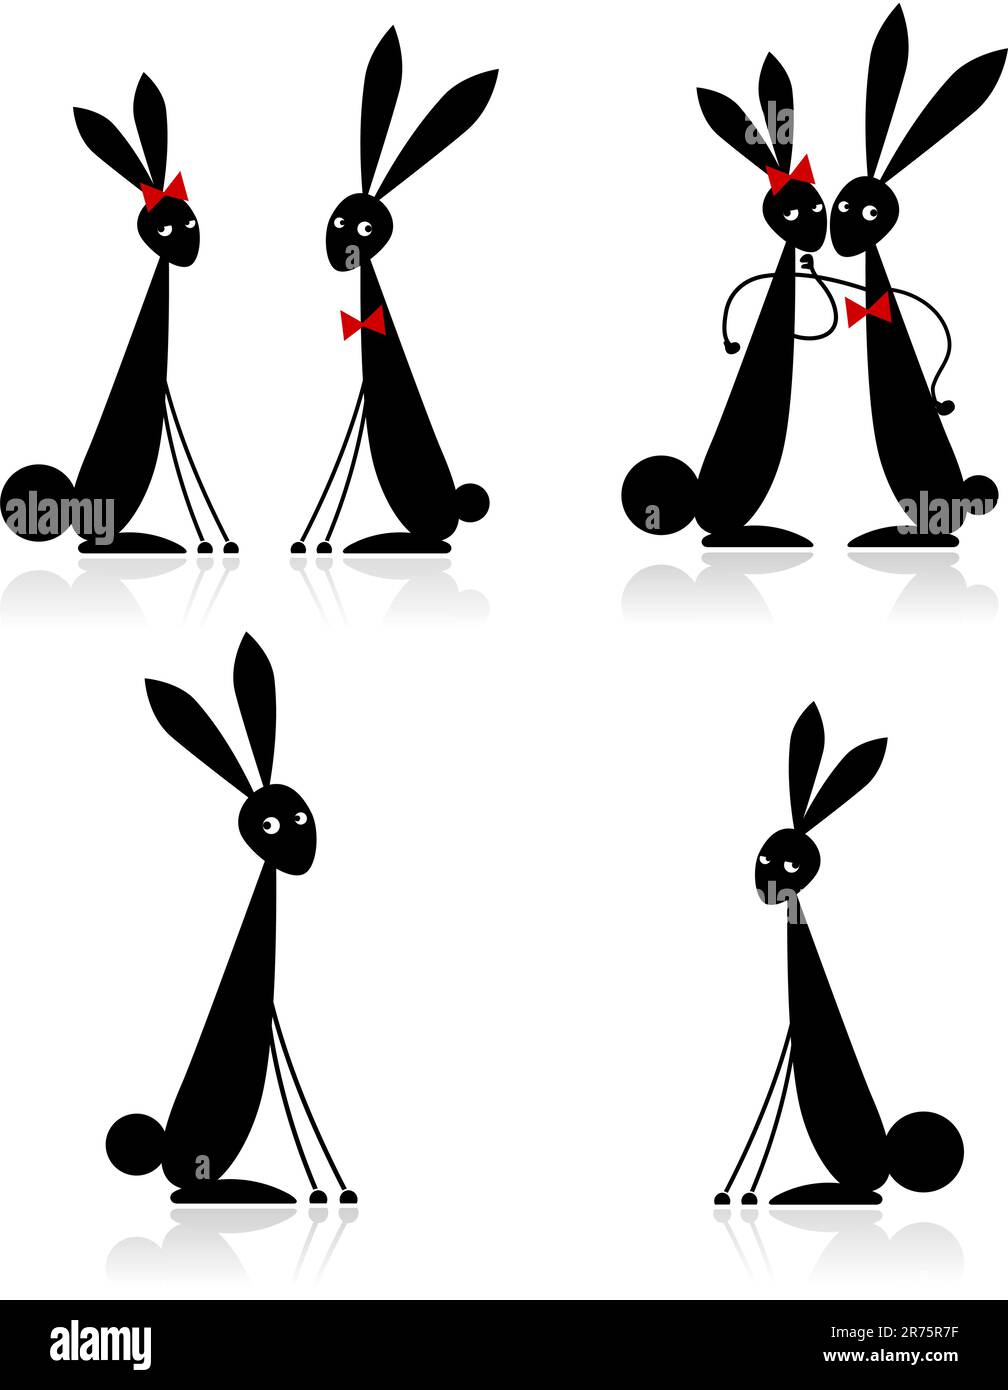 Des couples de lapins, silhouette noire pour votre conception Illustration de Vecteur